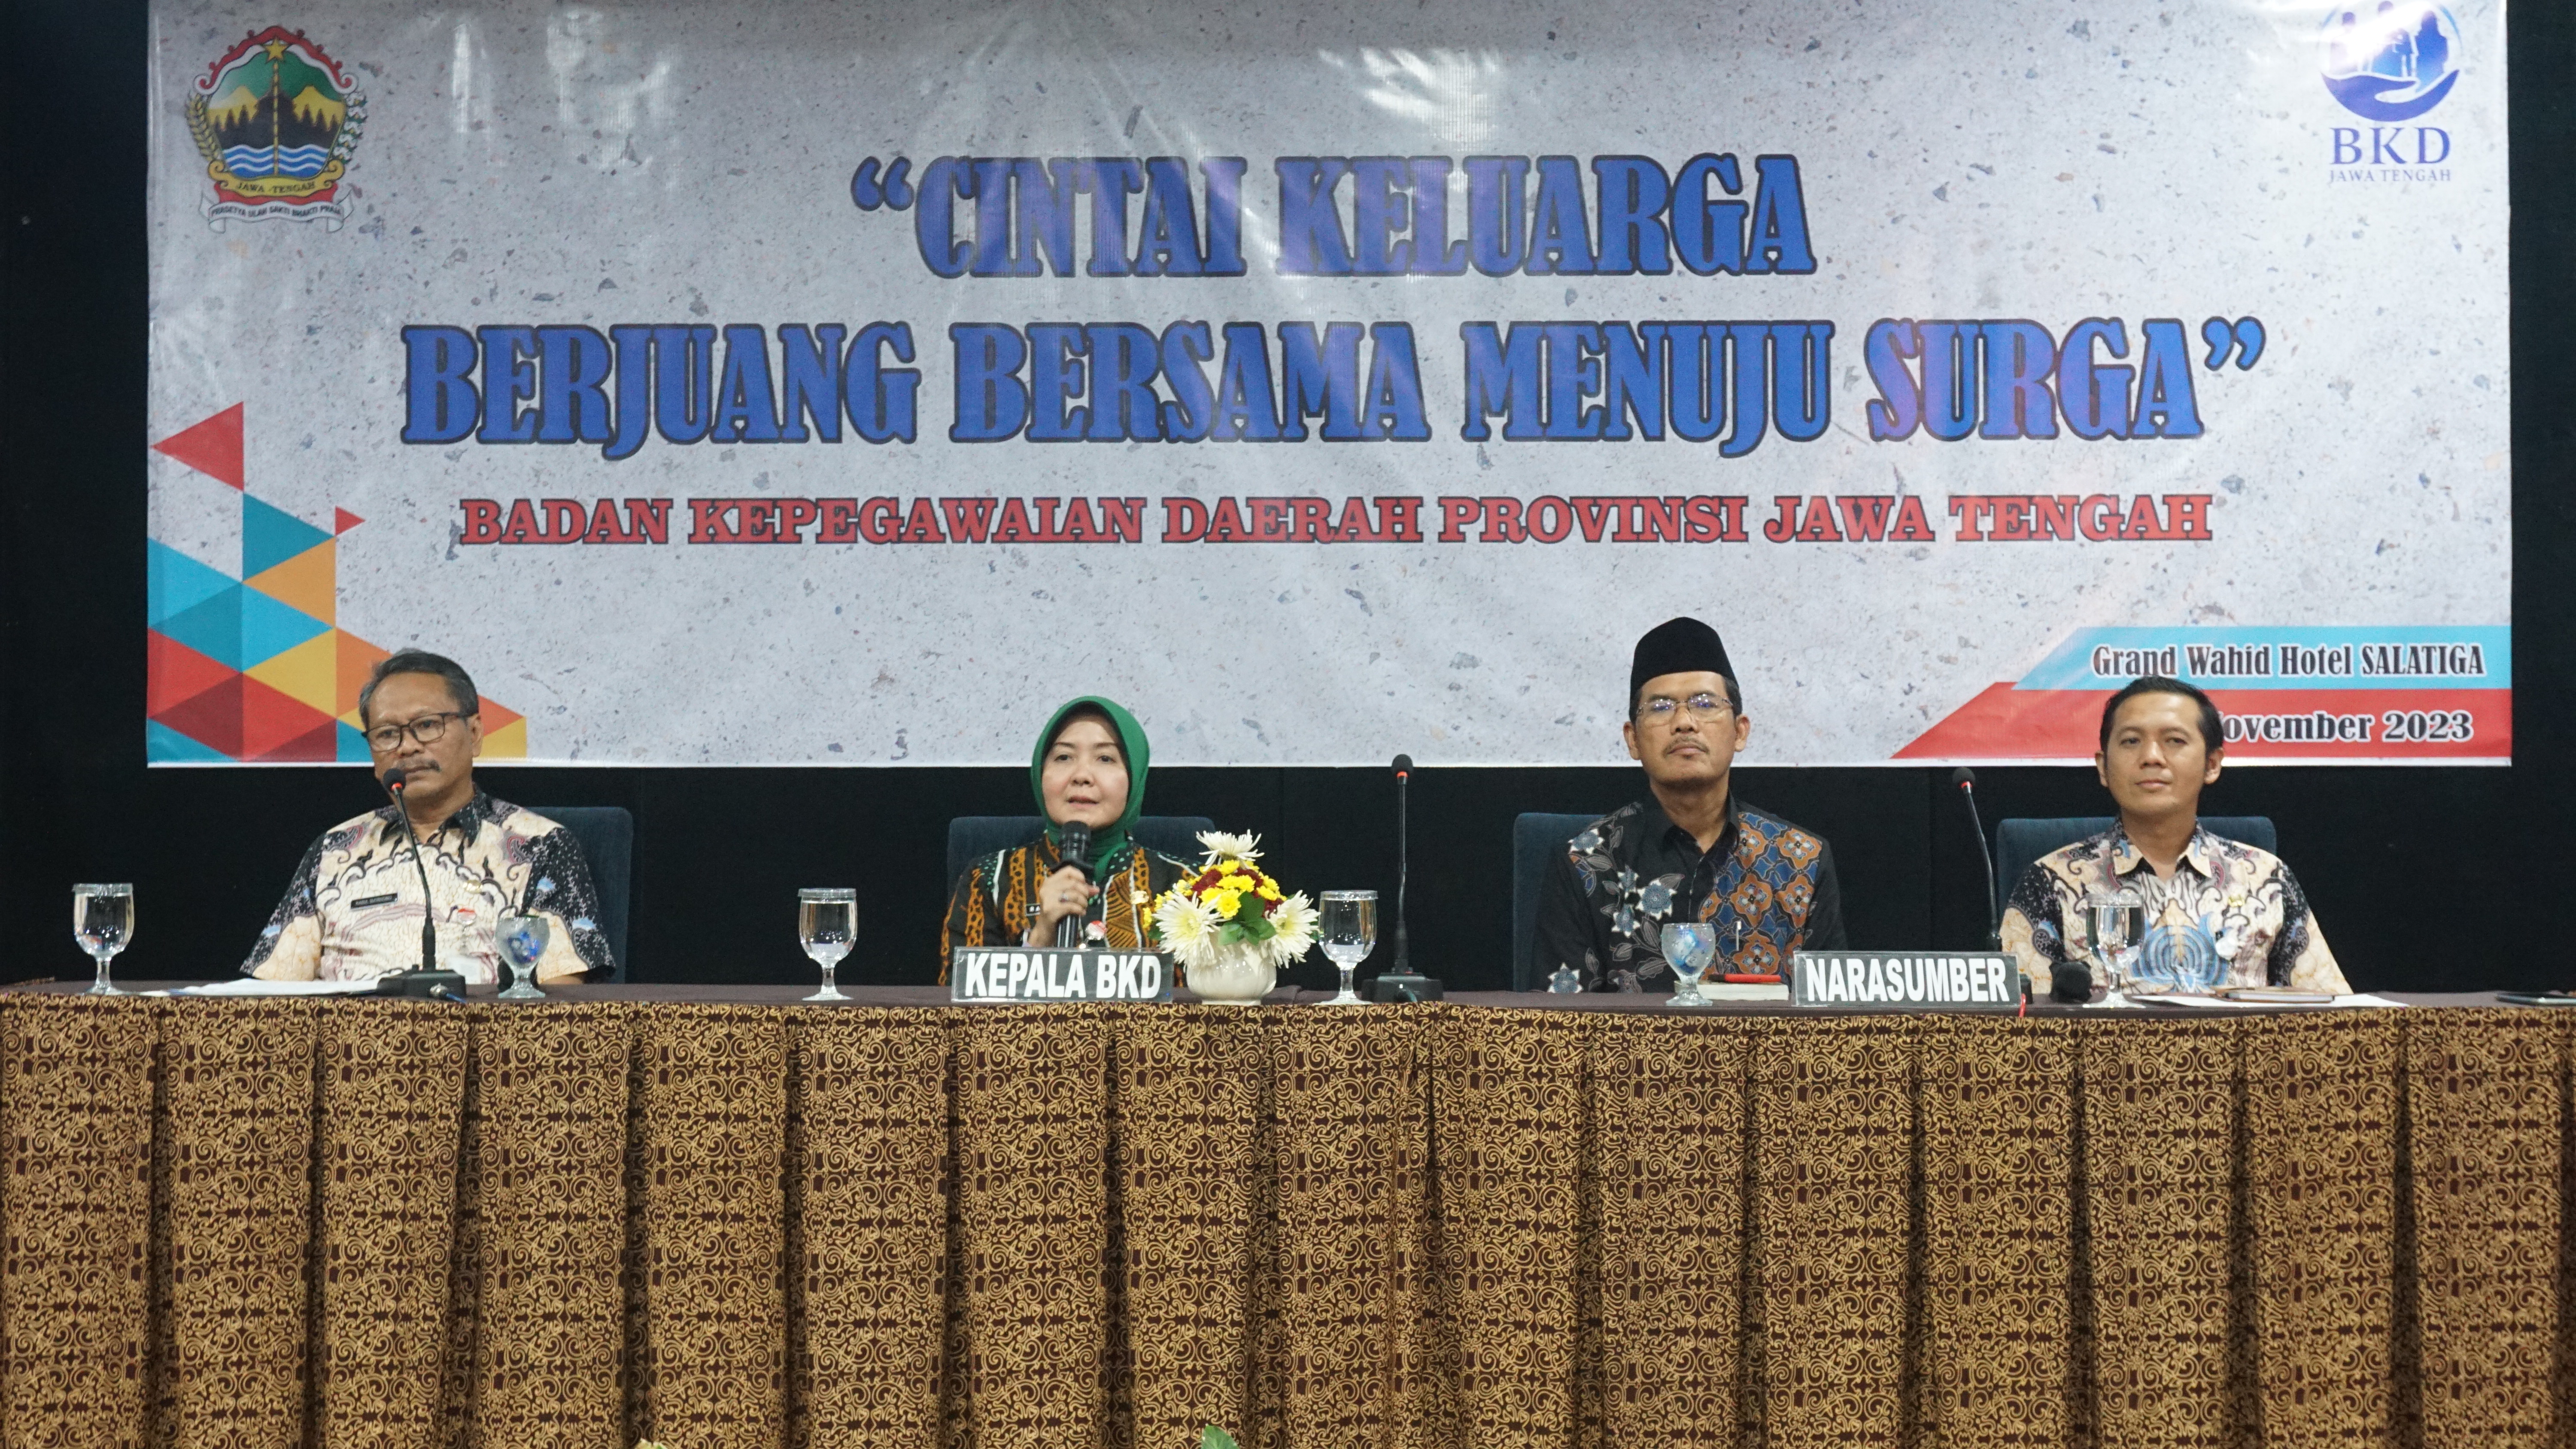 Badan Kepegawaian Daerah Provinsi Jawa Tengah menyelenggarakan kegiatan Pembekalan Perkawinan ASN Provinsi Jawa Tengah